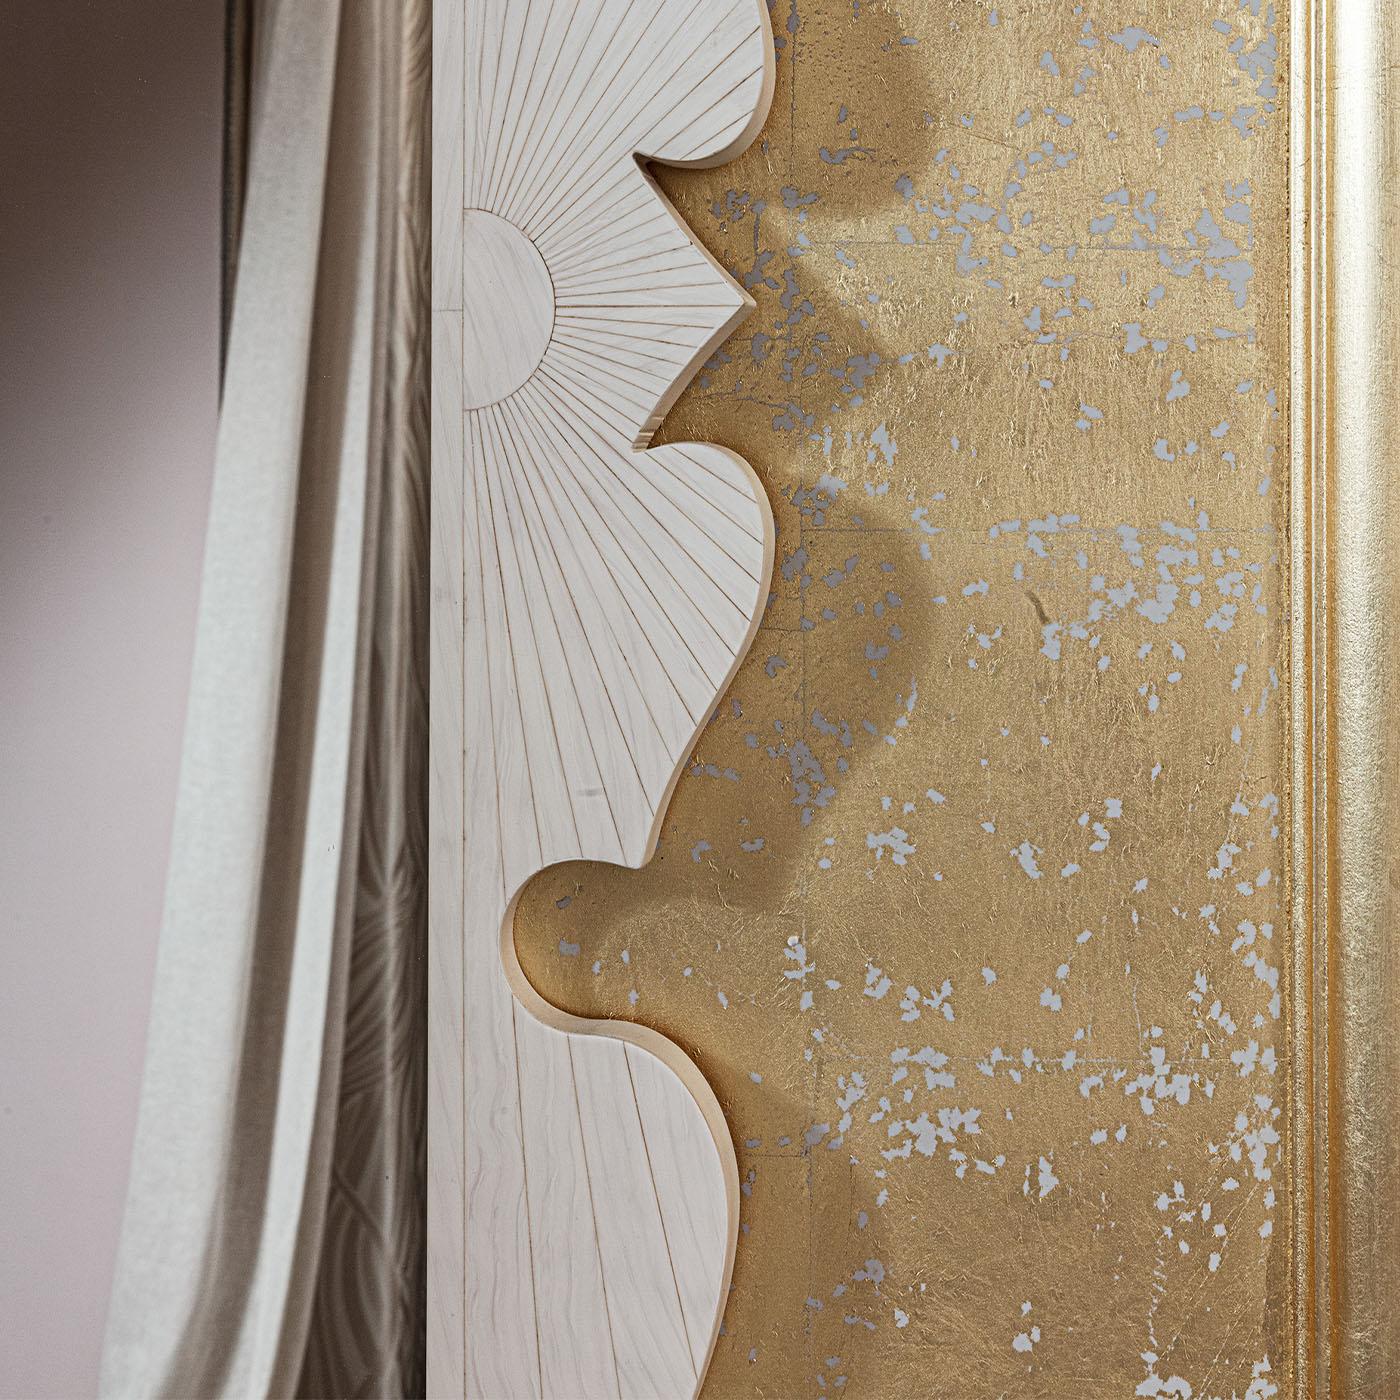 Dieser handgefertigte Spiegel mit Intarsien aus Öko-Elfenbein ist mit exquisiten Blattgolddetails umrahmt.